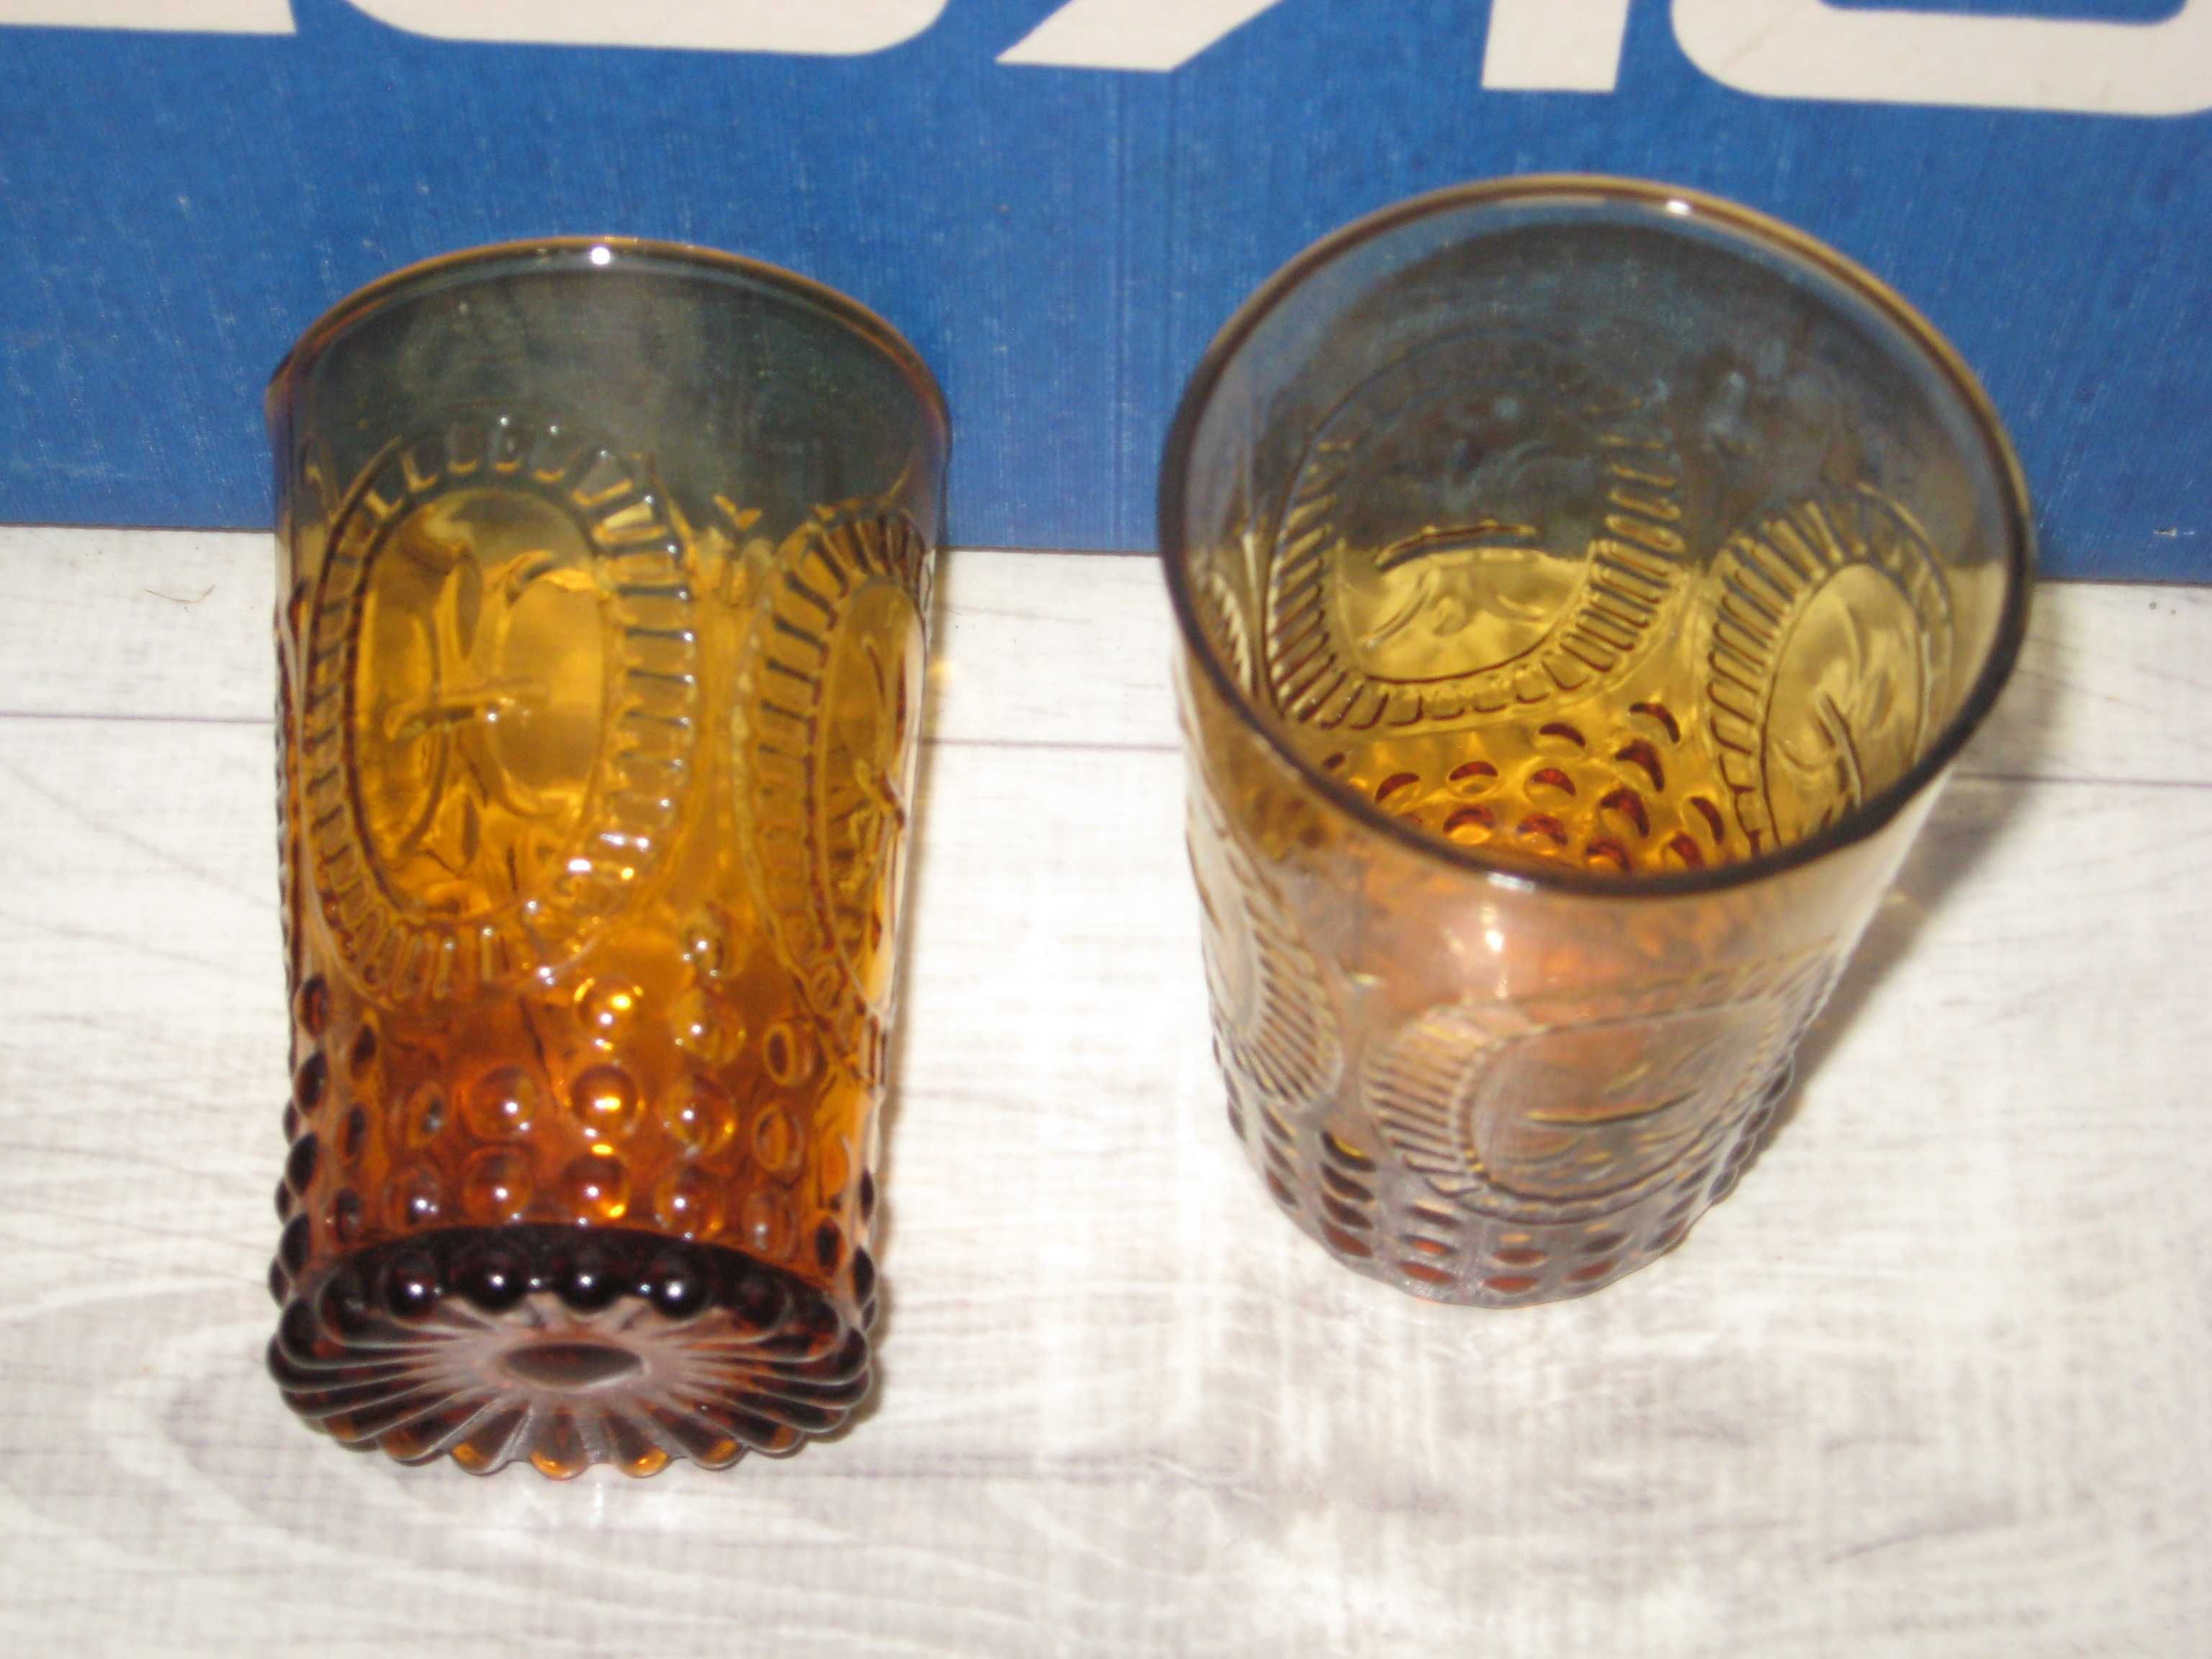 Szklanka szklana dwie sztuki x2 szklanki retro vintage pomarańczowe